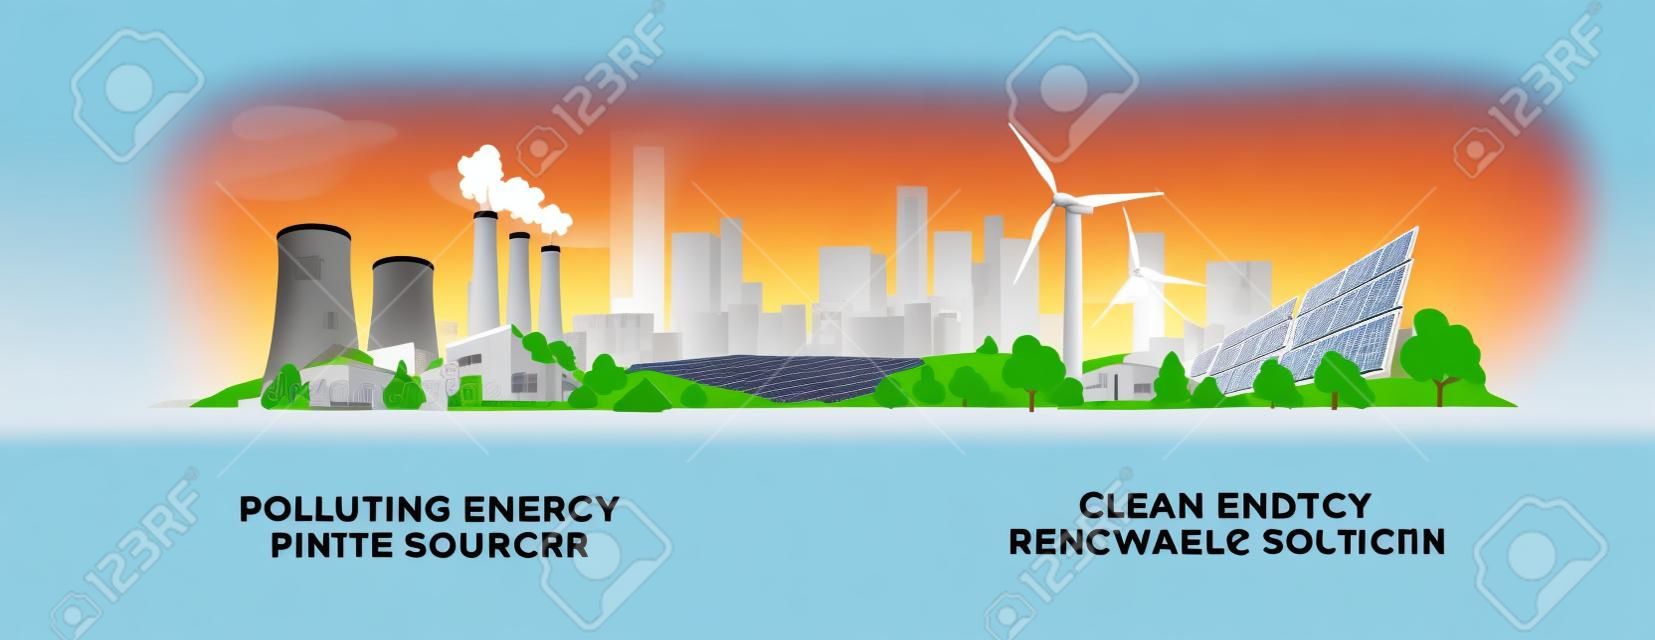 矢量图显示清洁和污染的发电生产。与化石动力煤和核电厂相比，清洁的太阳能电池板和风力涡轮机污染可再生能源。